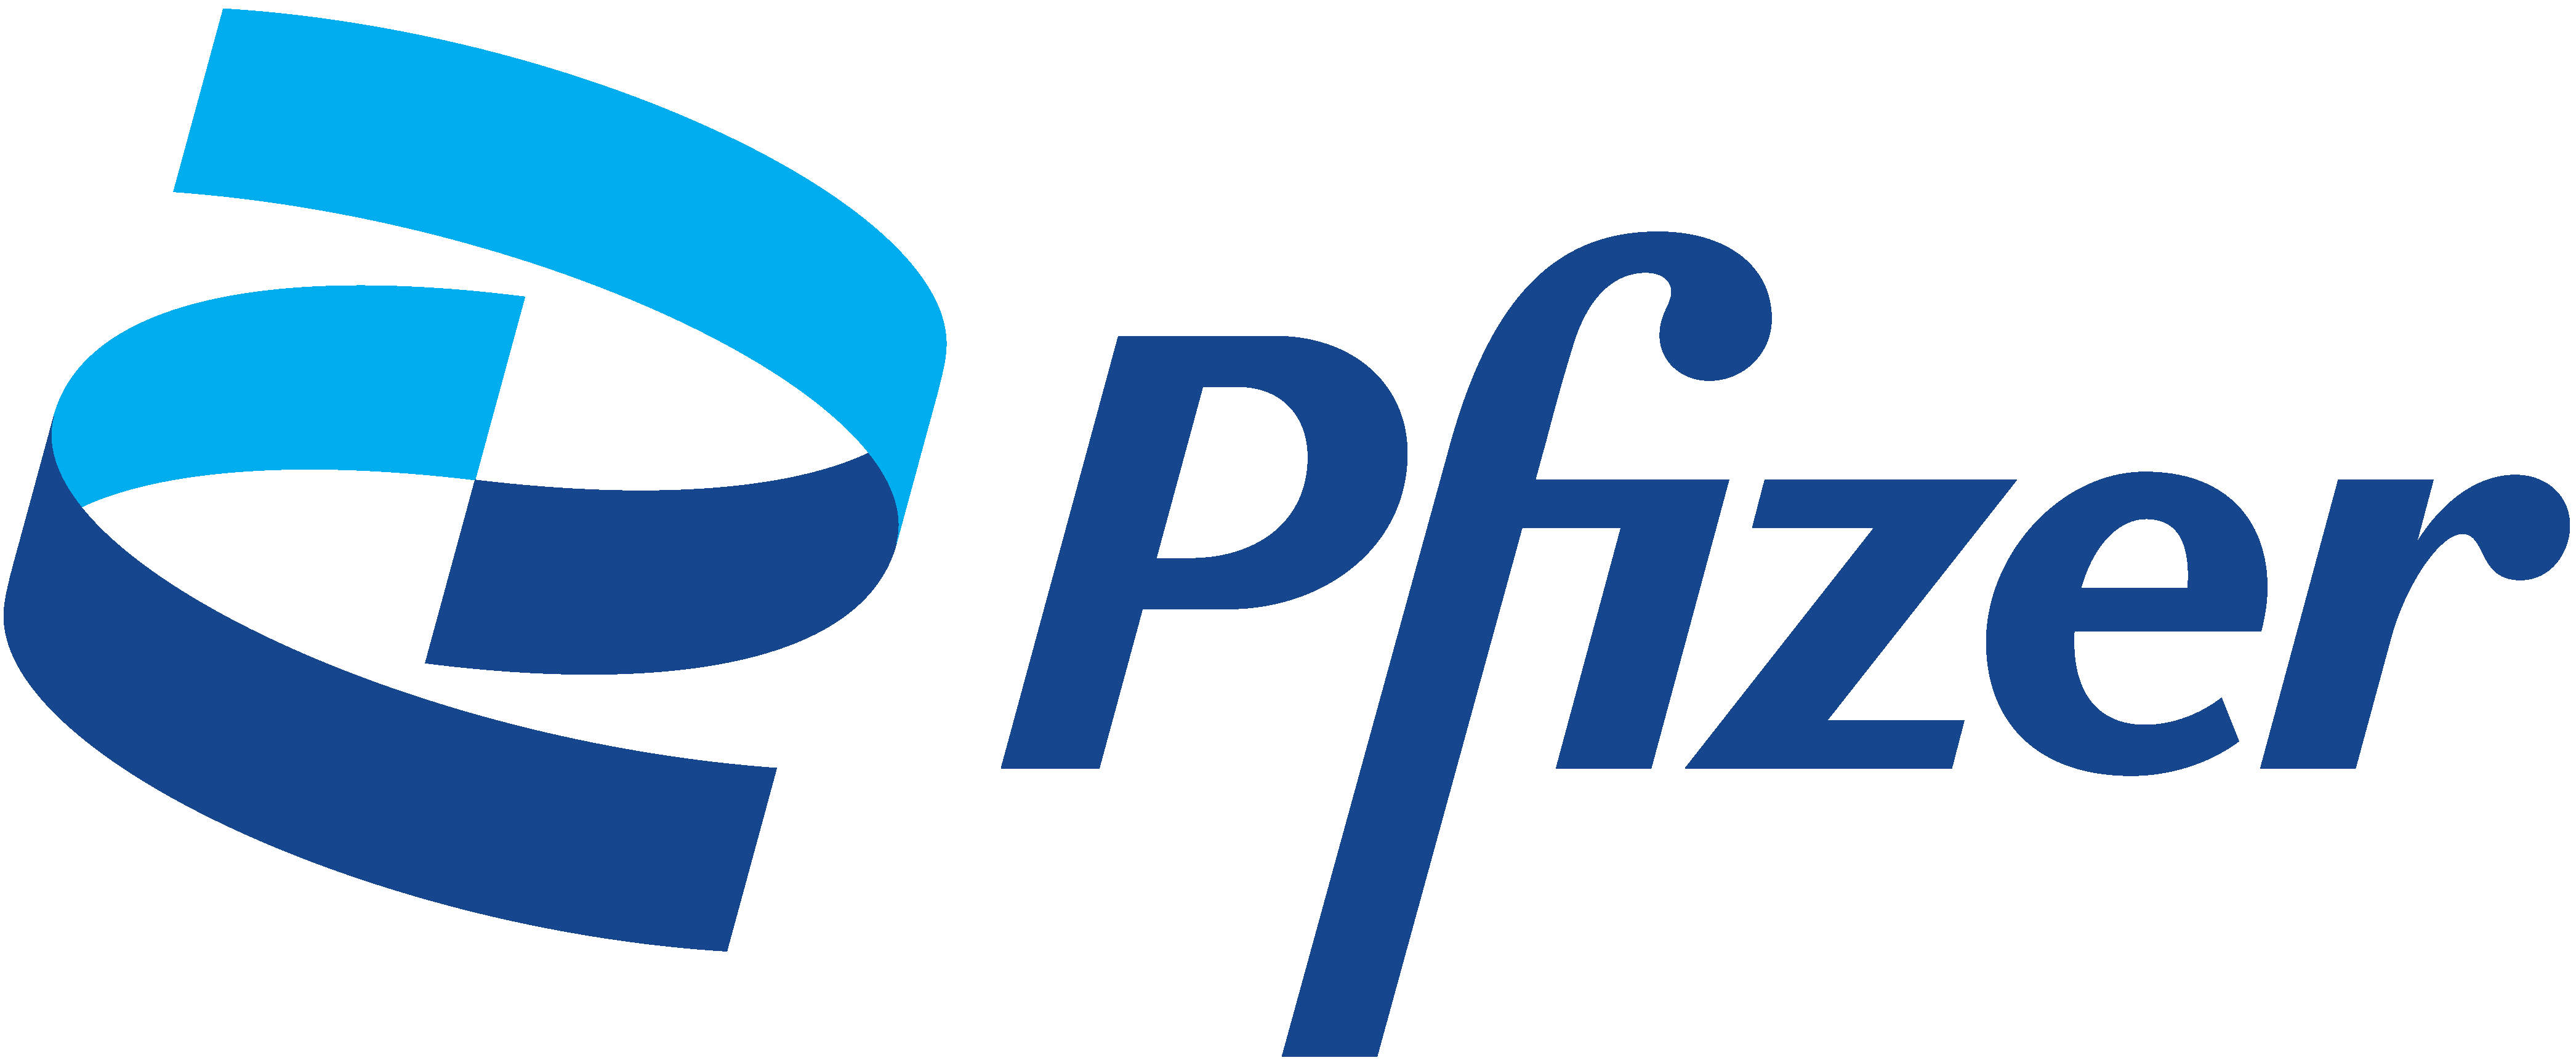 Pfizer UK Ltd